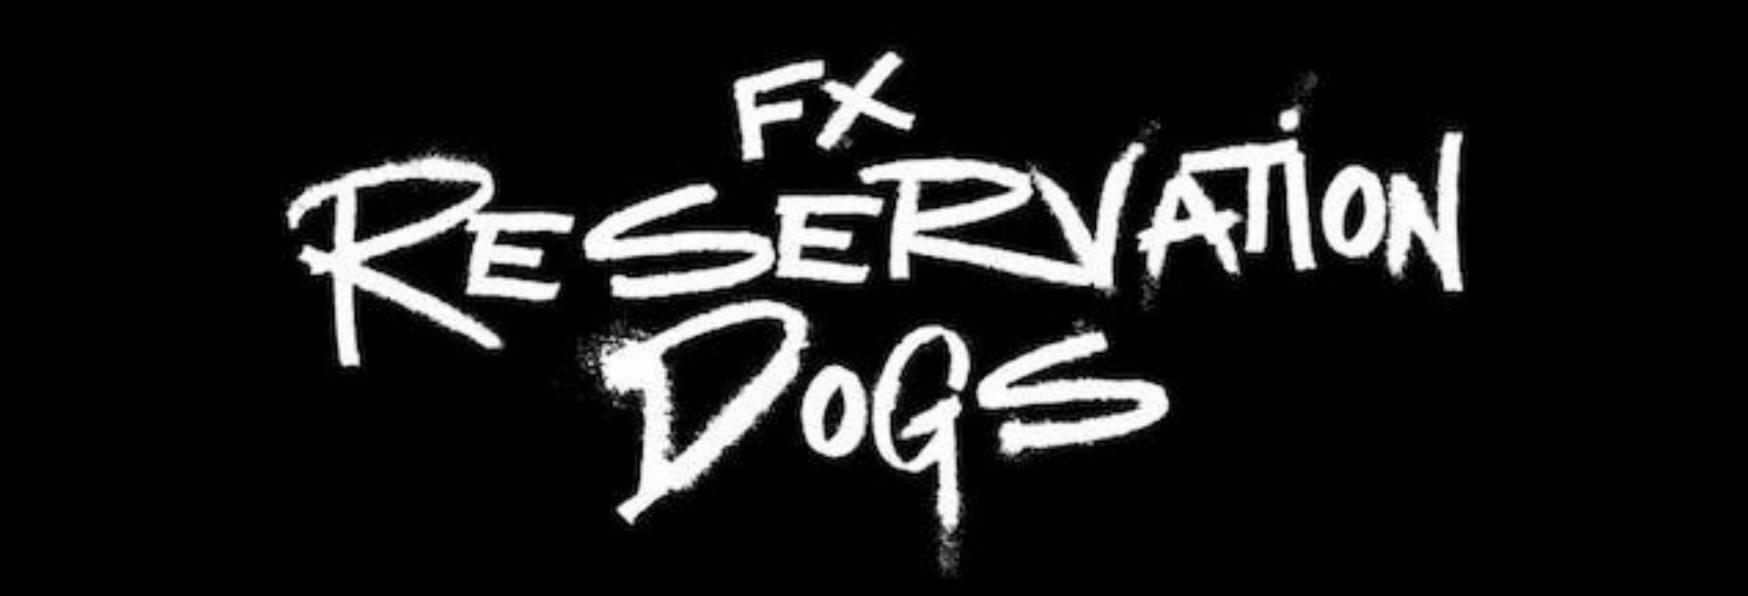 Reservation Dogs: Trama, Cast, Data di Uscita, Trailer e tutte le Informazioni note sull'inedita Serie TV targata FX